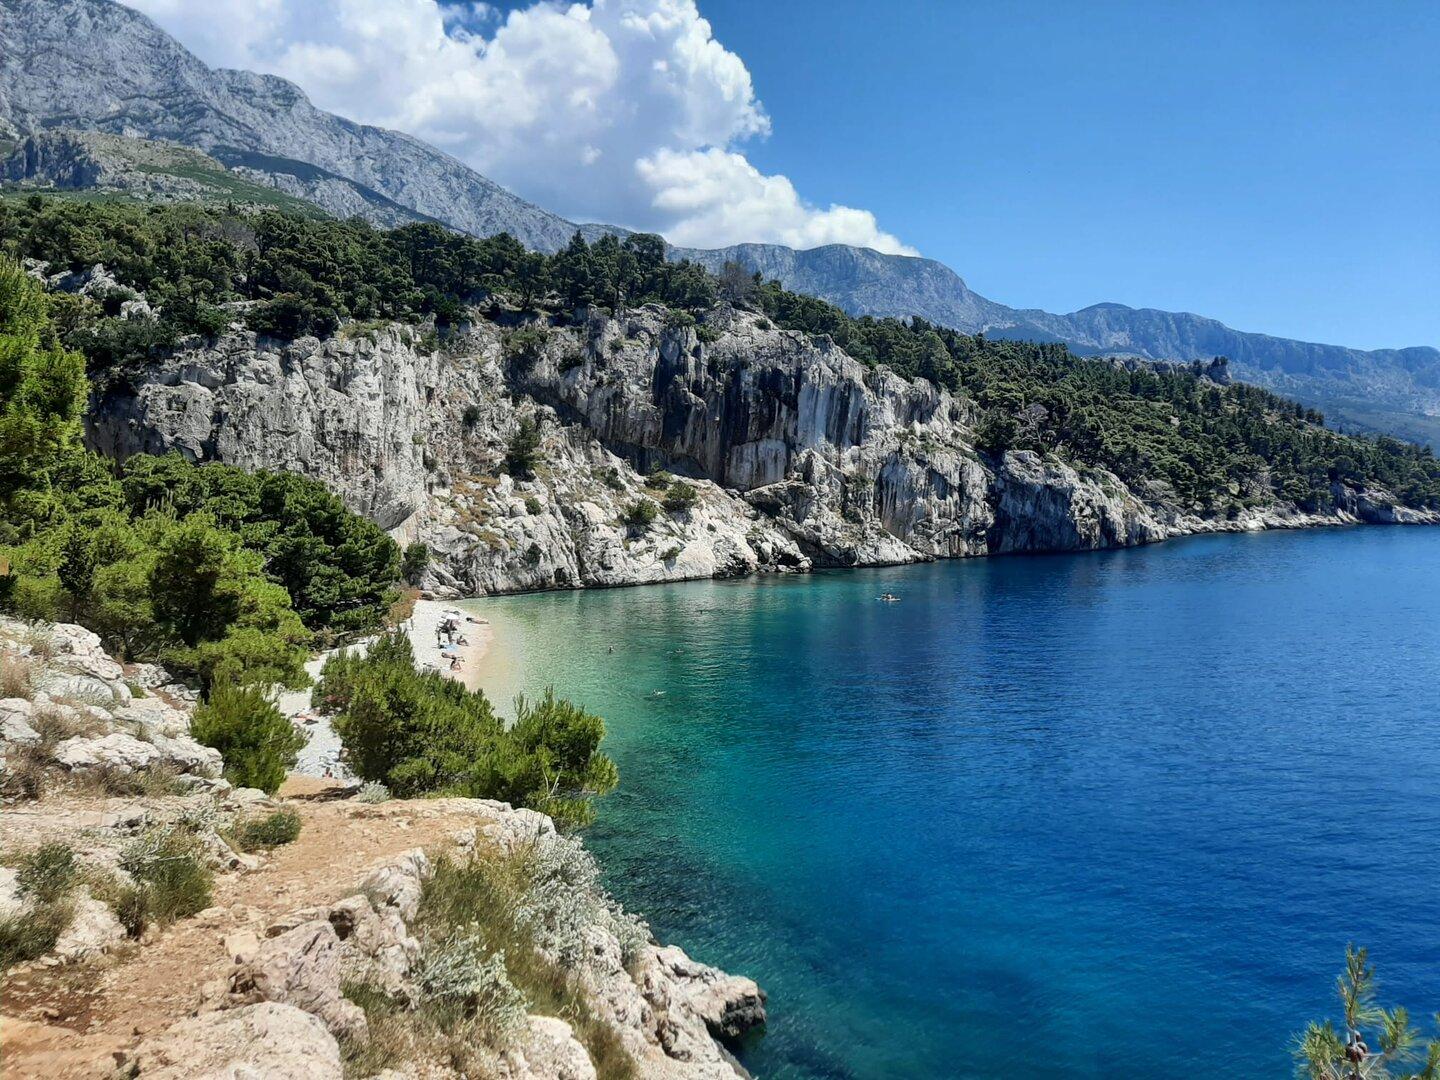 Adria-Urlaub: Makarska in Dalmatien hat die schönsten Kiesstrände